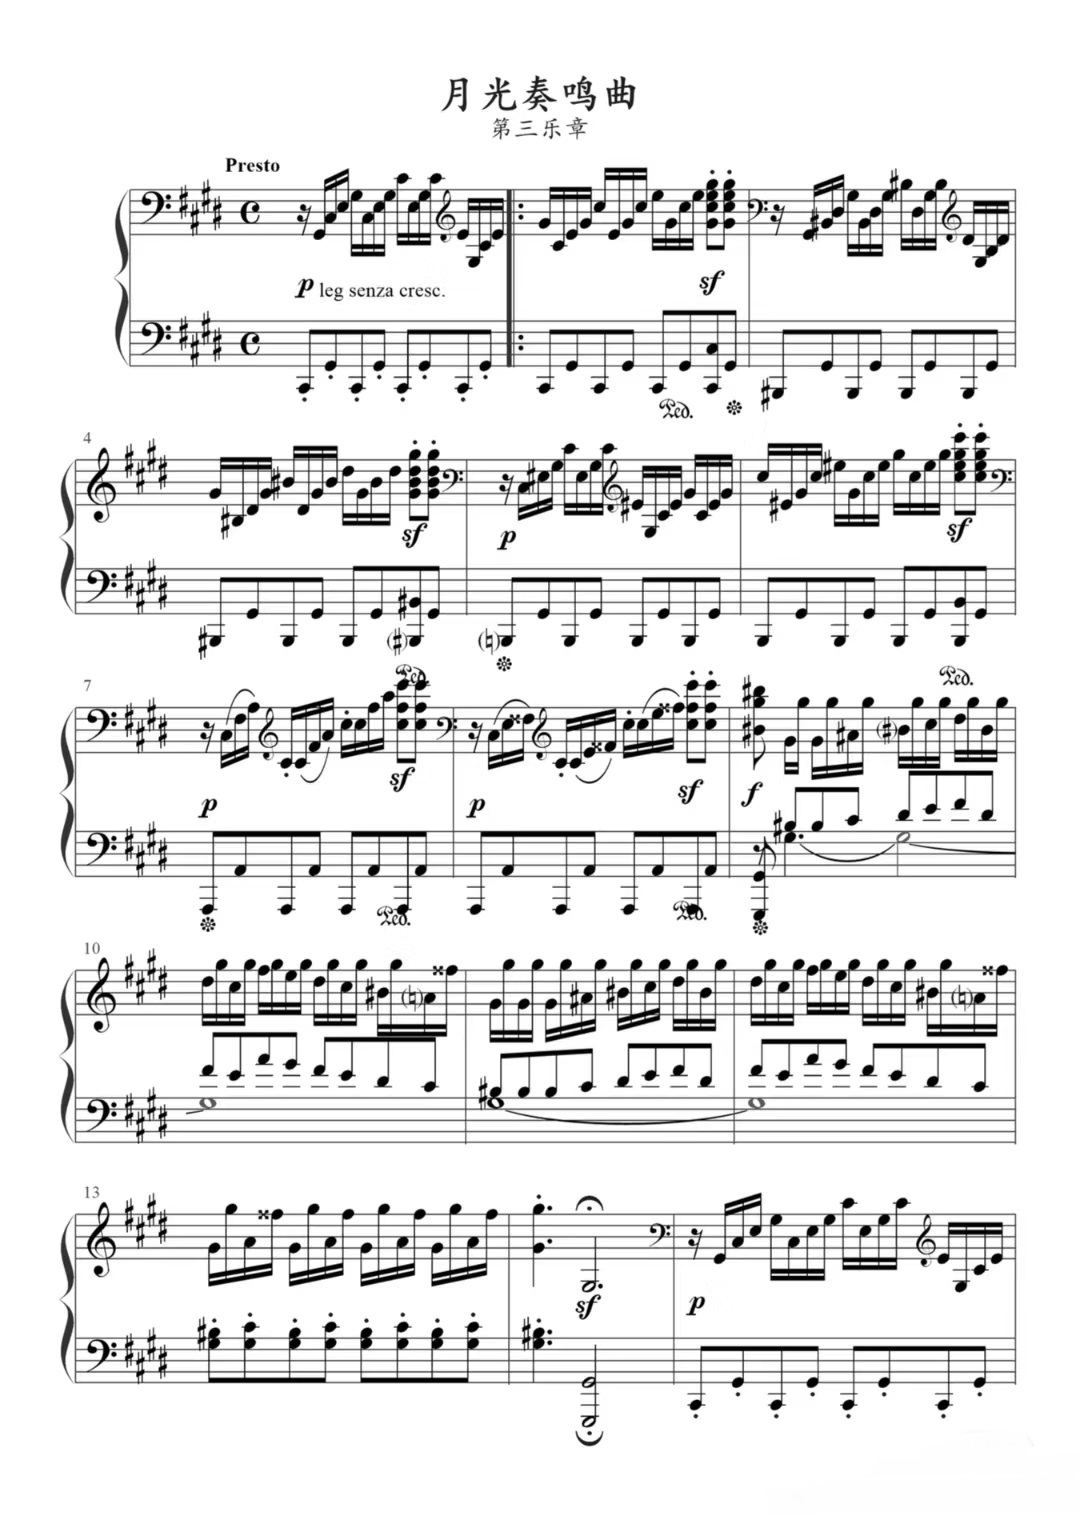 《月光曲》的钢琴谱钢琴曲谱 - 第三乐章